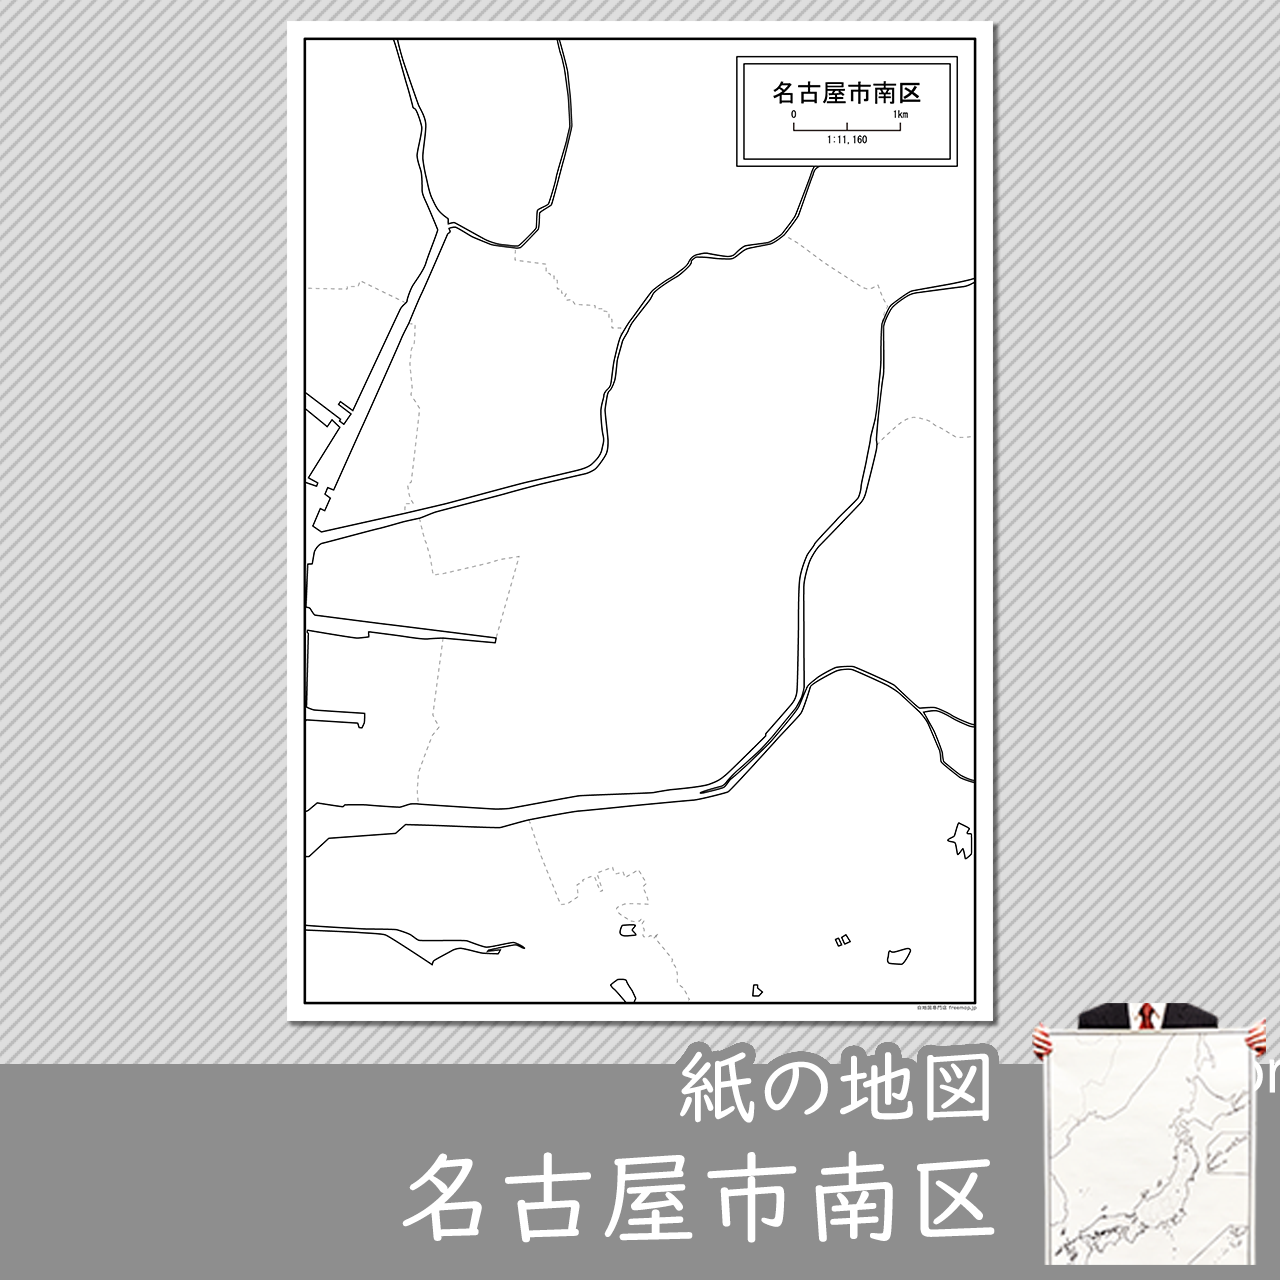 名古屋市南区の紙の白地図のサムネイル